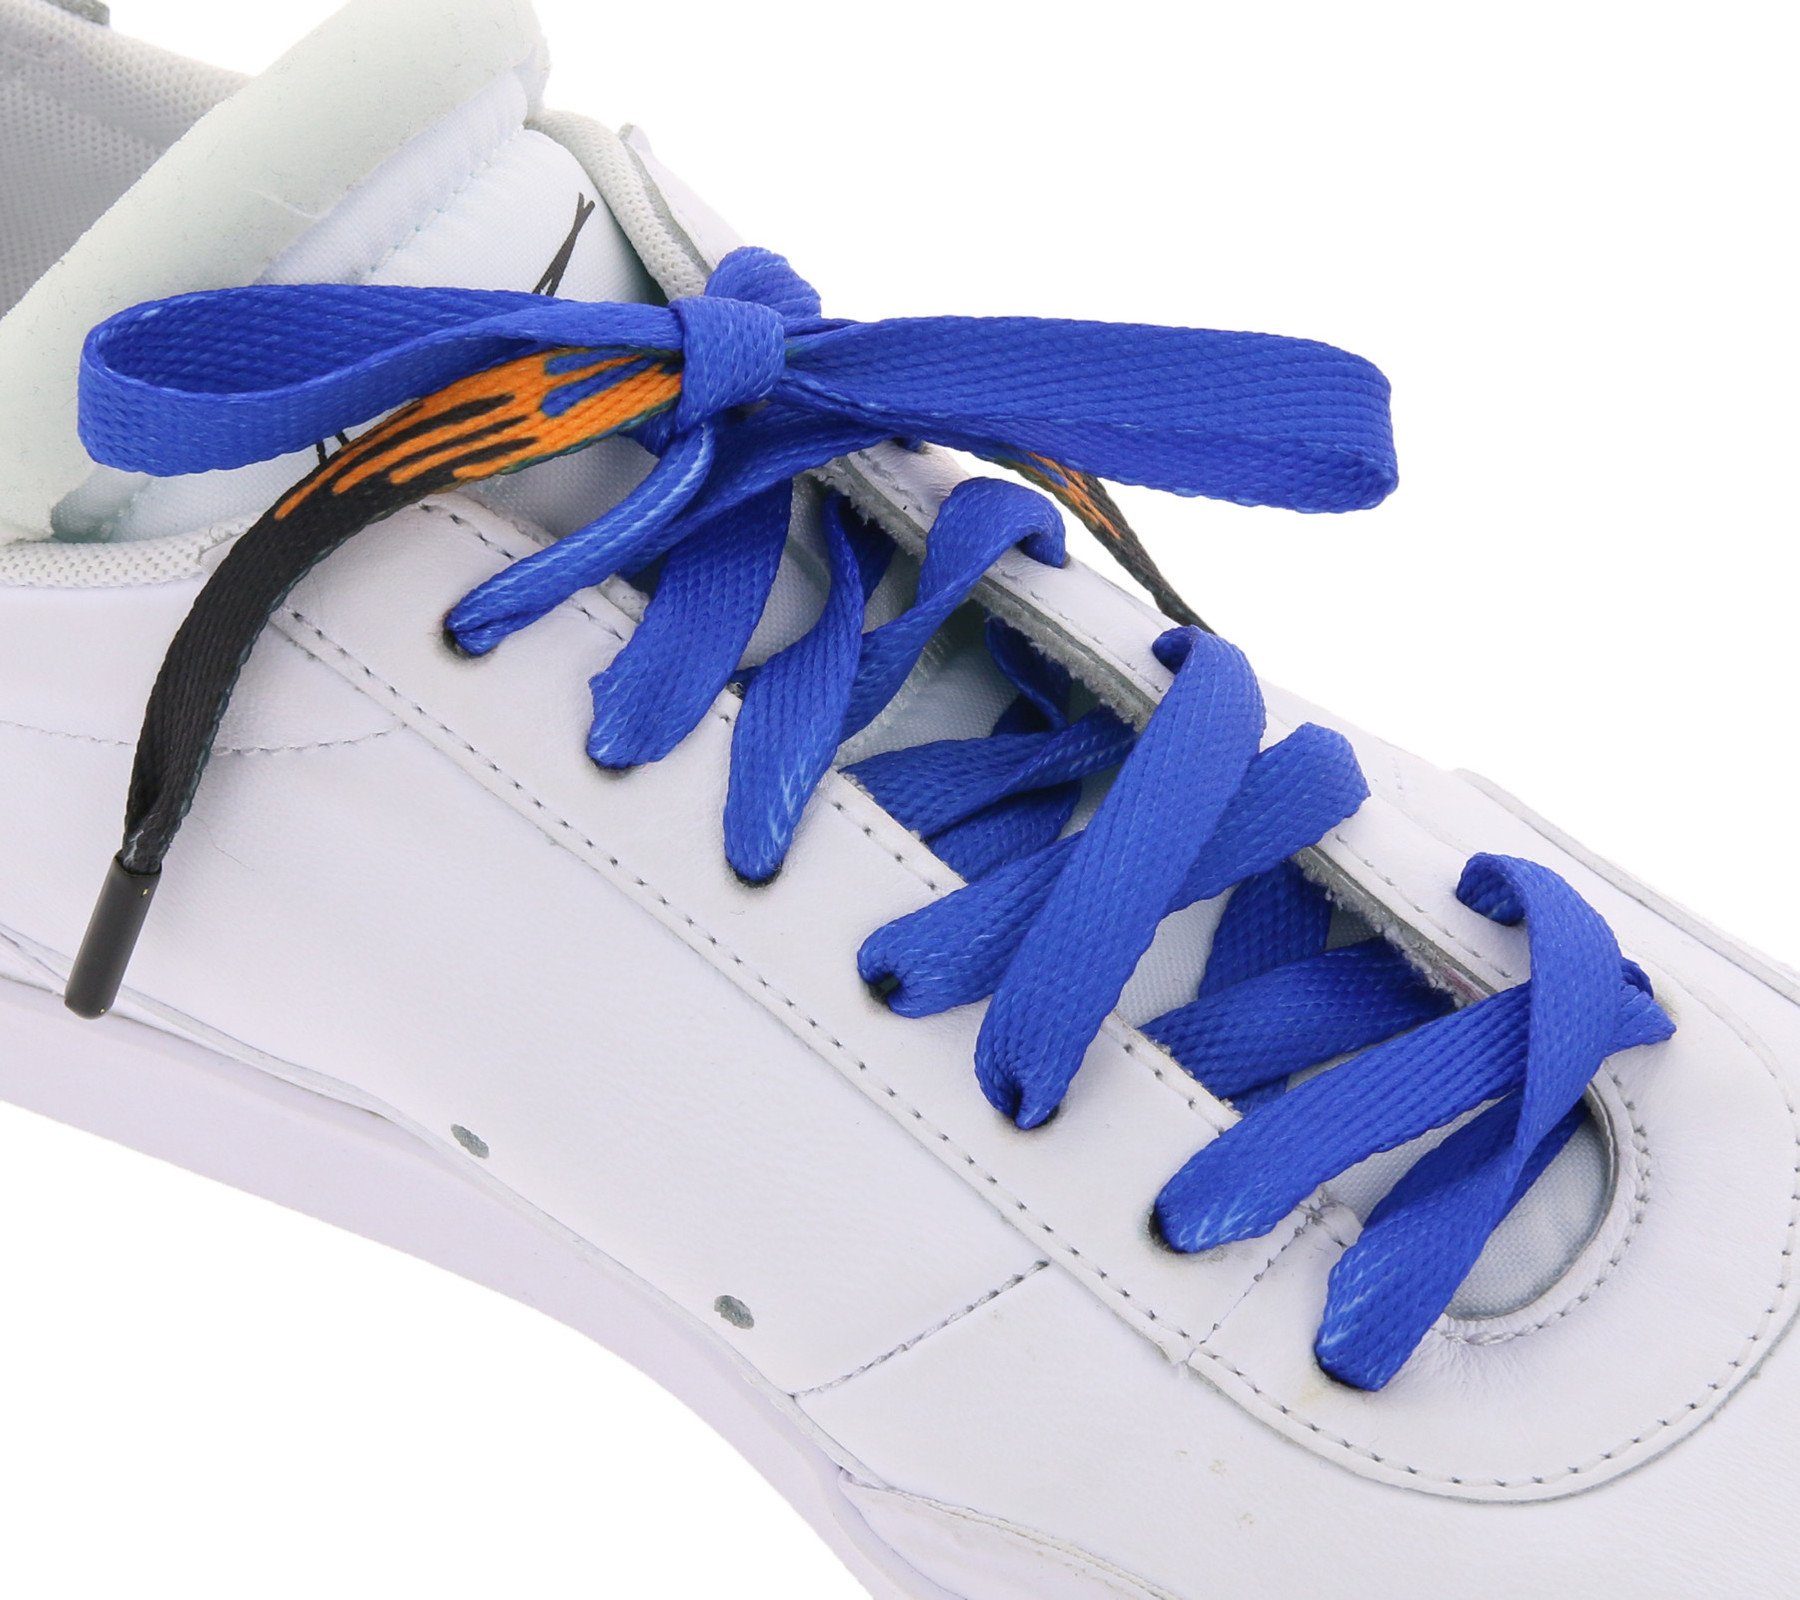 Tubelaces Schnürsenkel TubeLaces Schuhe Schnürbänder trendige Schnürsenkel Schuhbänder Navy/Schwarz/Orange